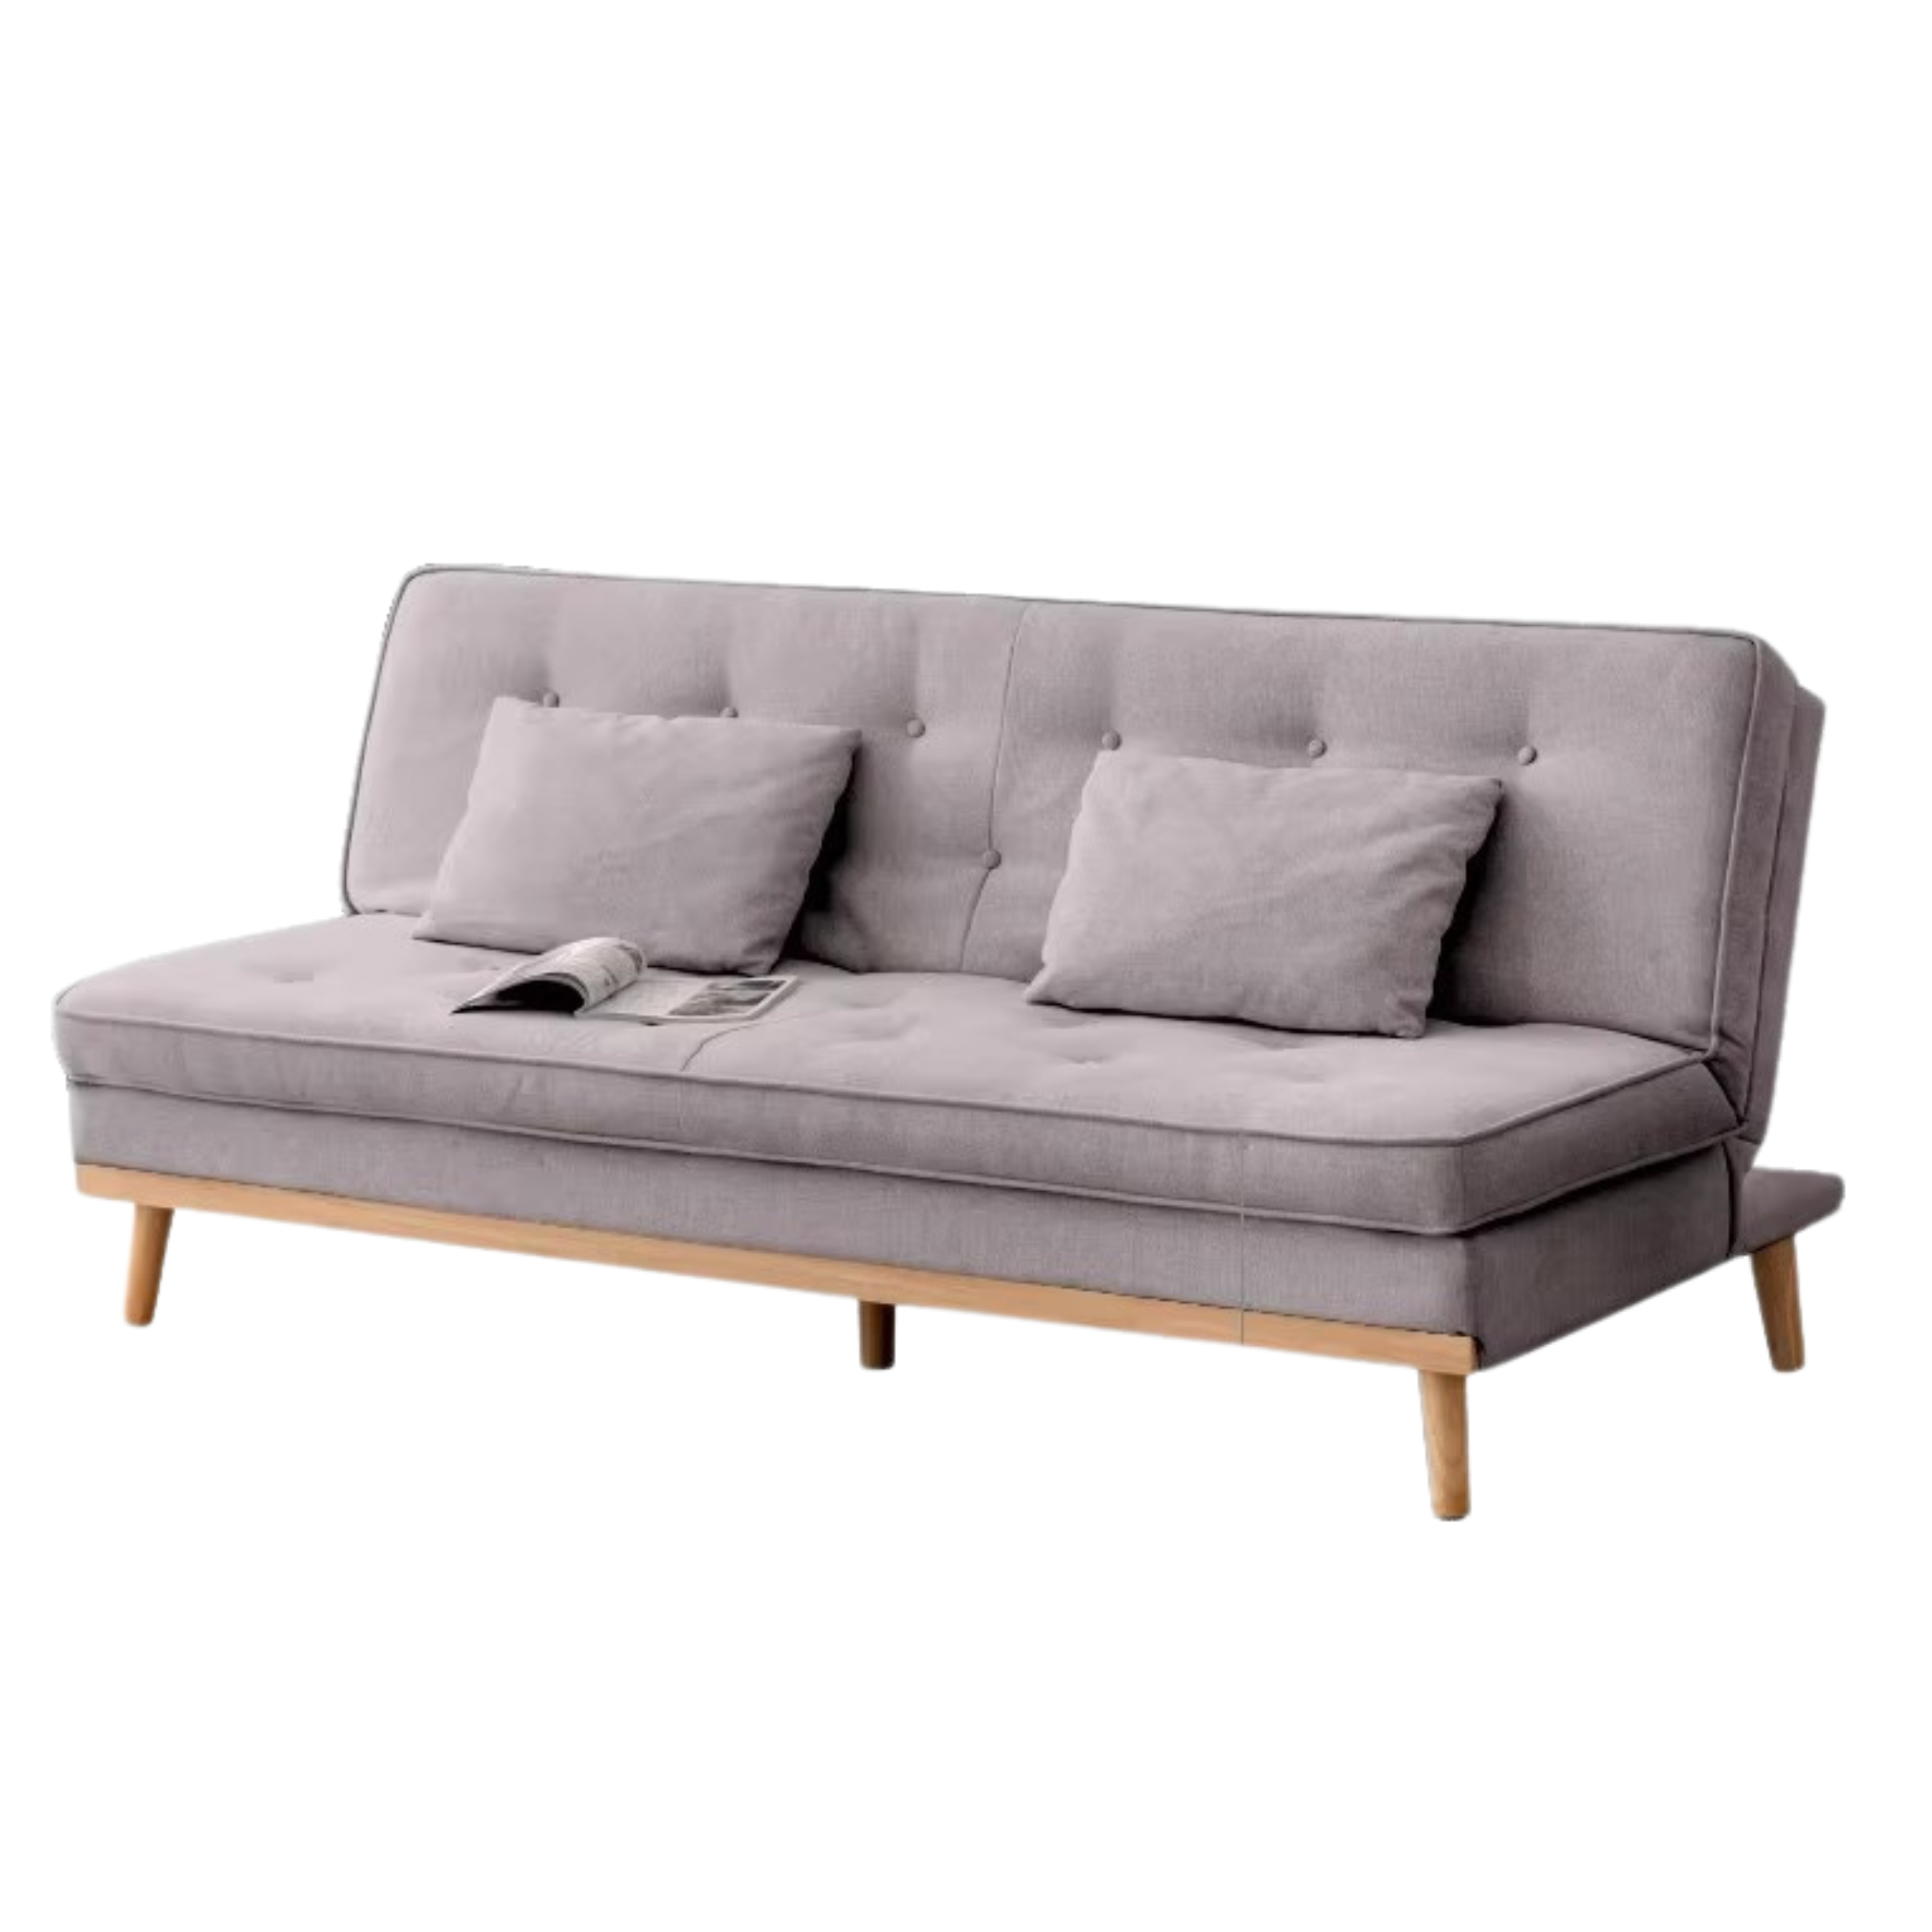 Beech solid wood folding Sleeper Fabric sofa)